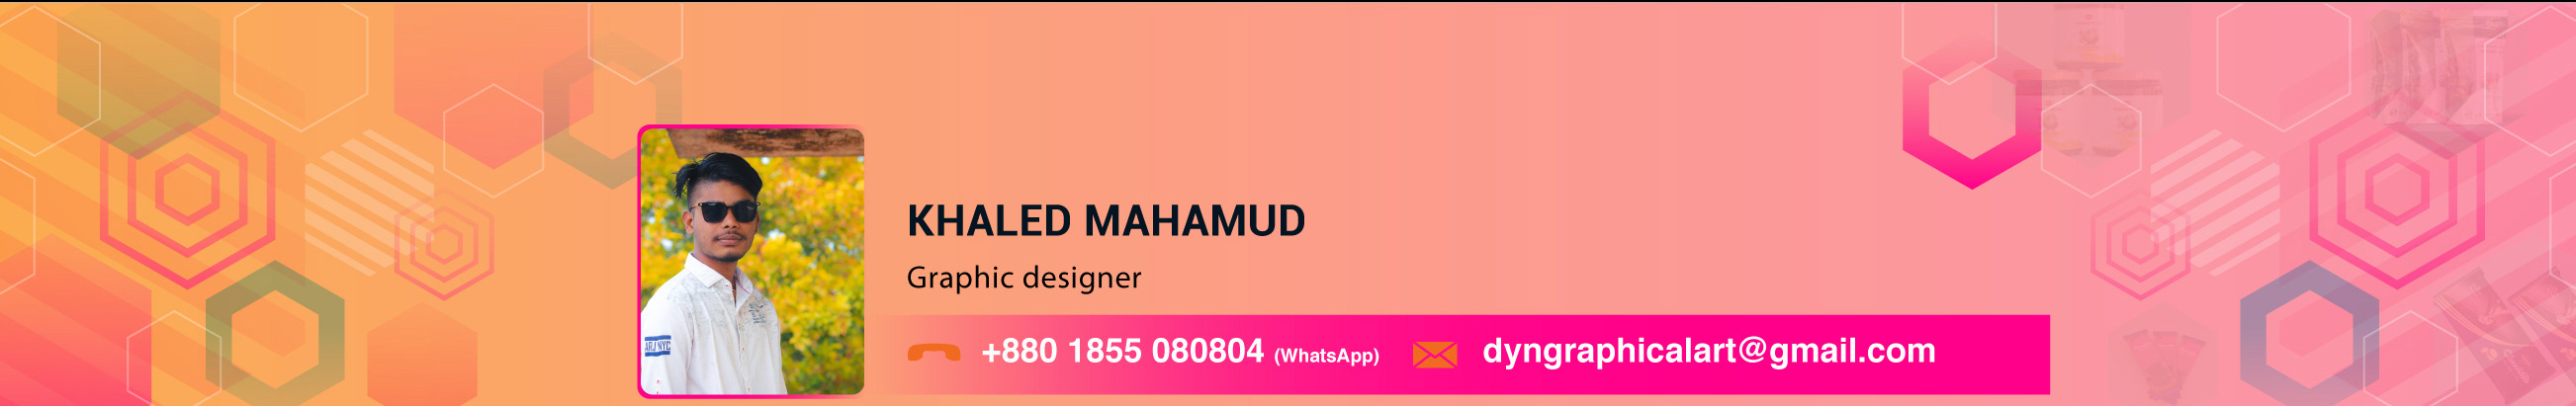 Khaled Mahamud's profile banner